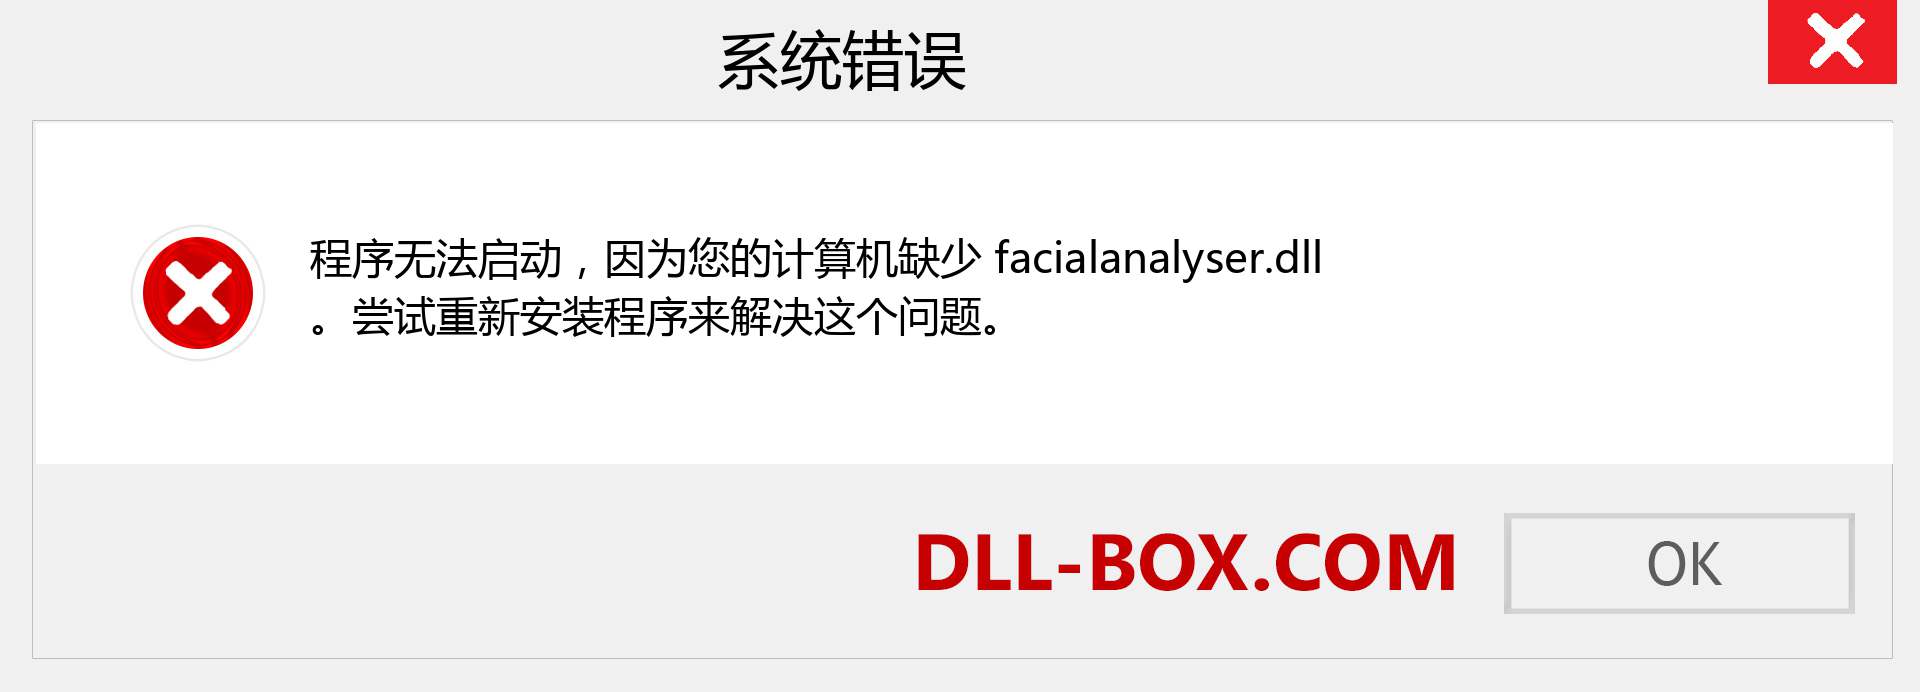 facialanalyser.dll 文件丢失？。 适用于 Windows 7、8、10 的下载 - 修复 Windows、照片、图像上的 facialanalyser dll 丢失错误